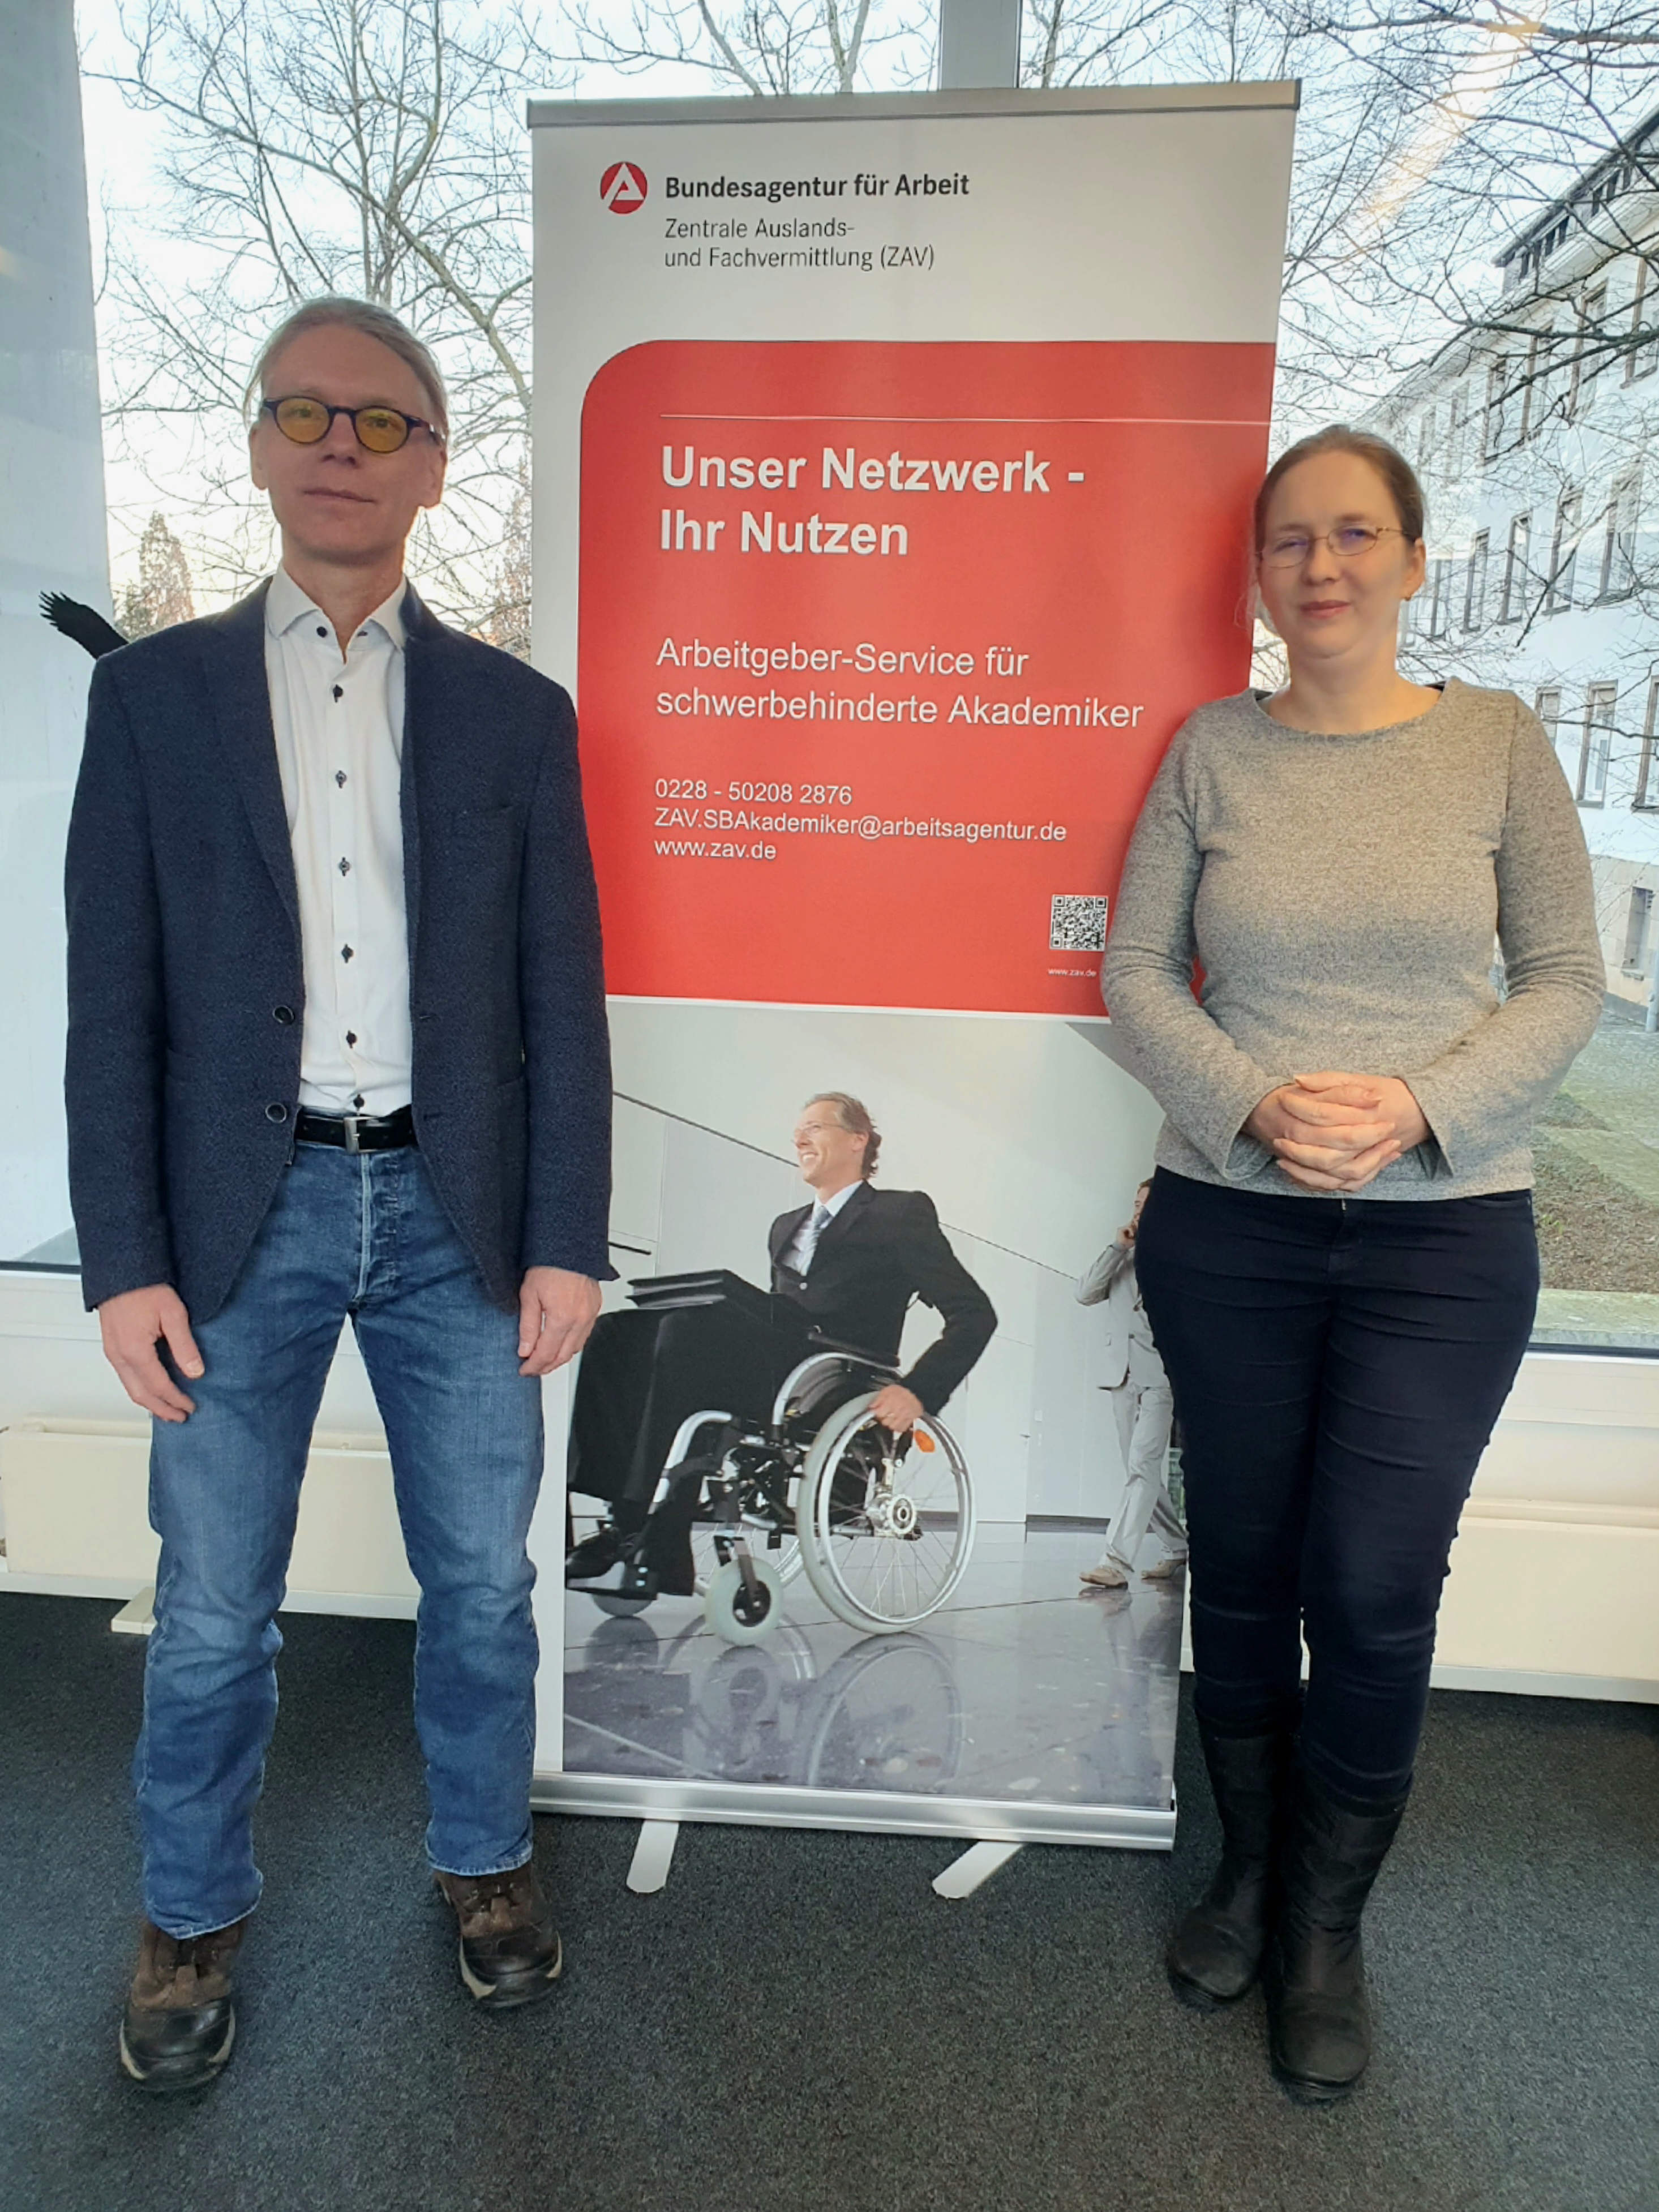  Das iXNet-Team – Von links nach rechts: Andreas Brüning und Dr. Tatjana Schweizer